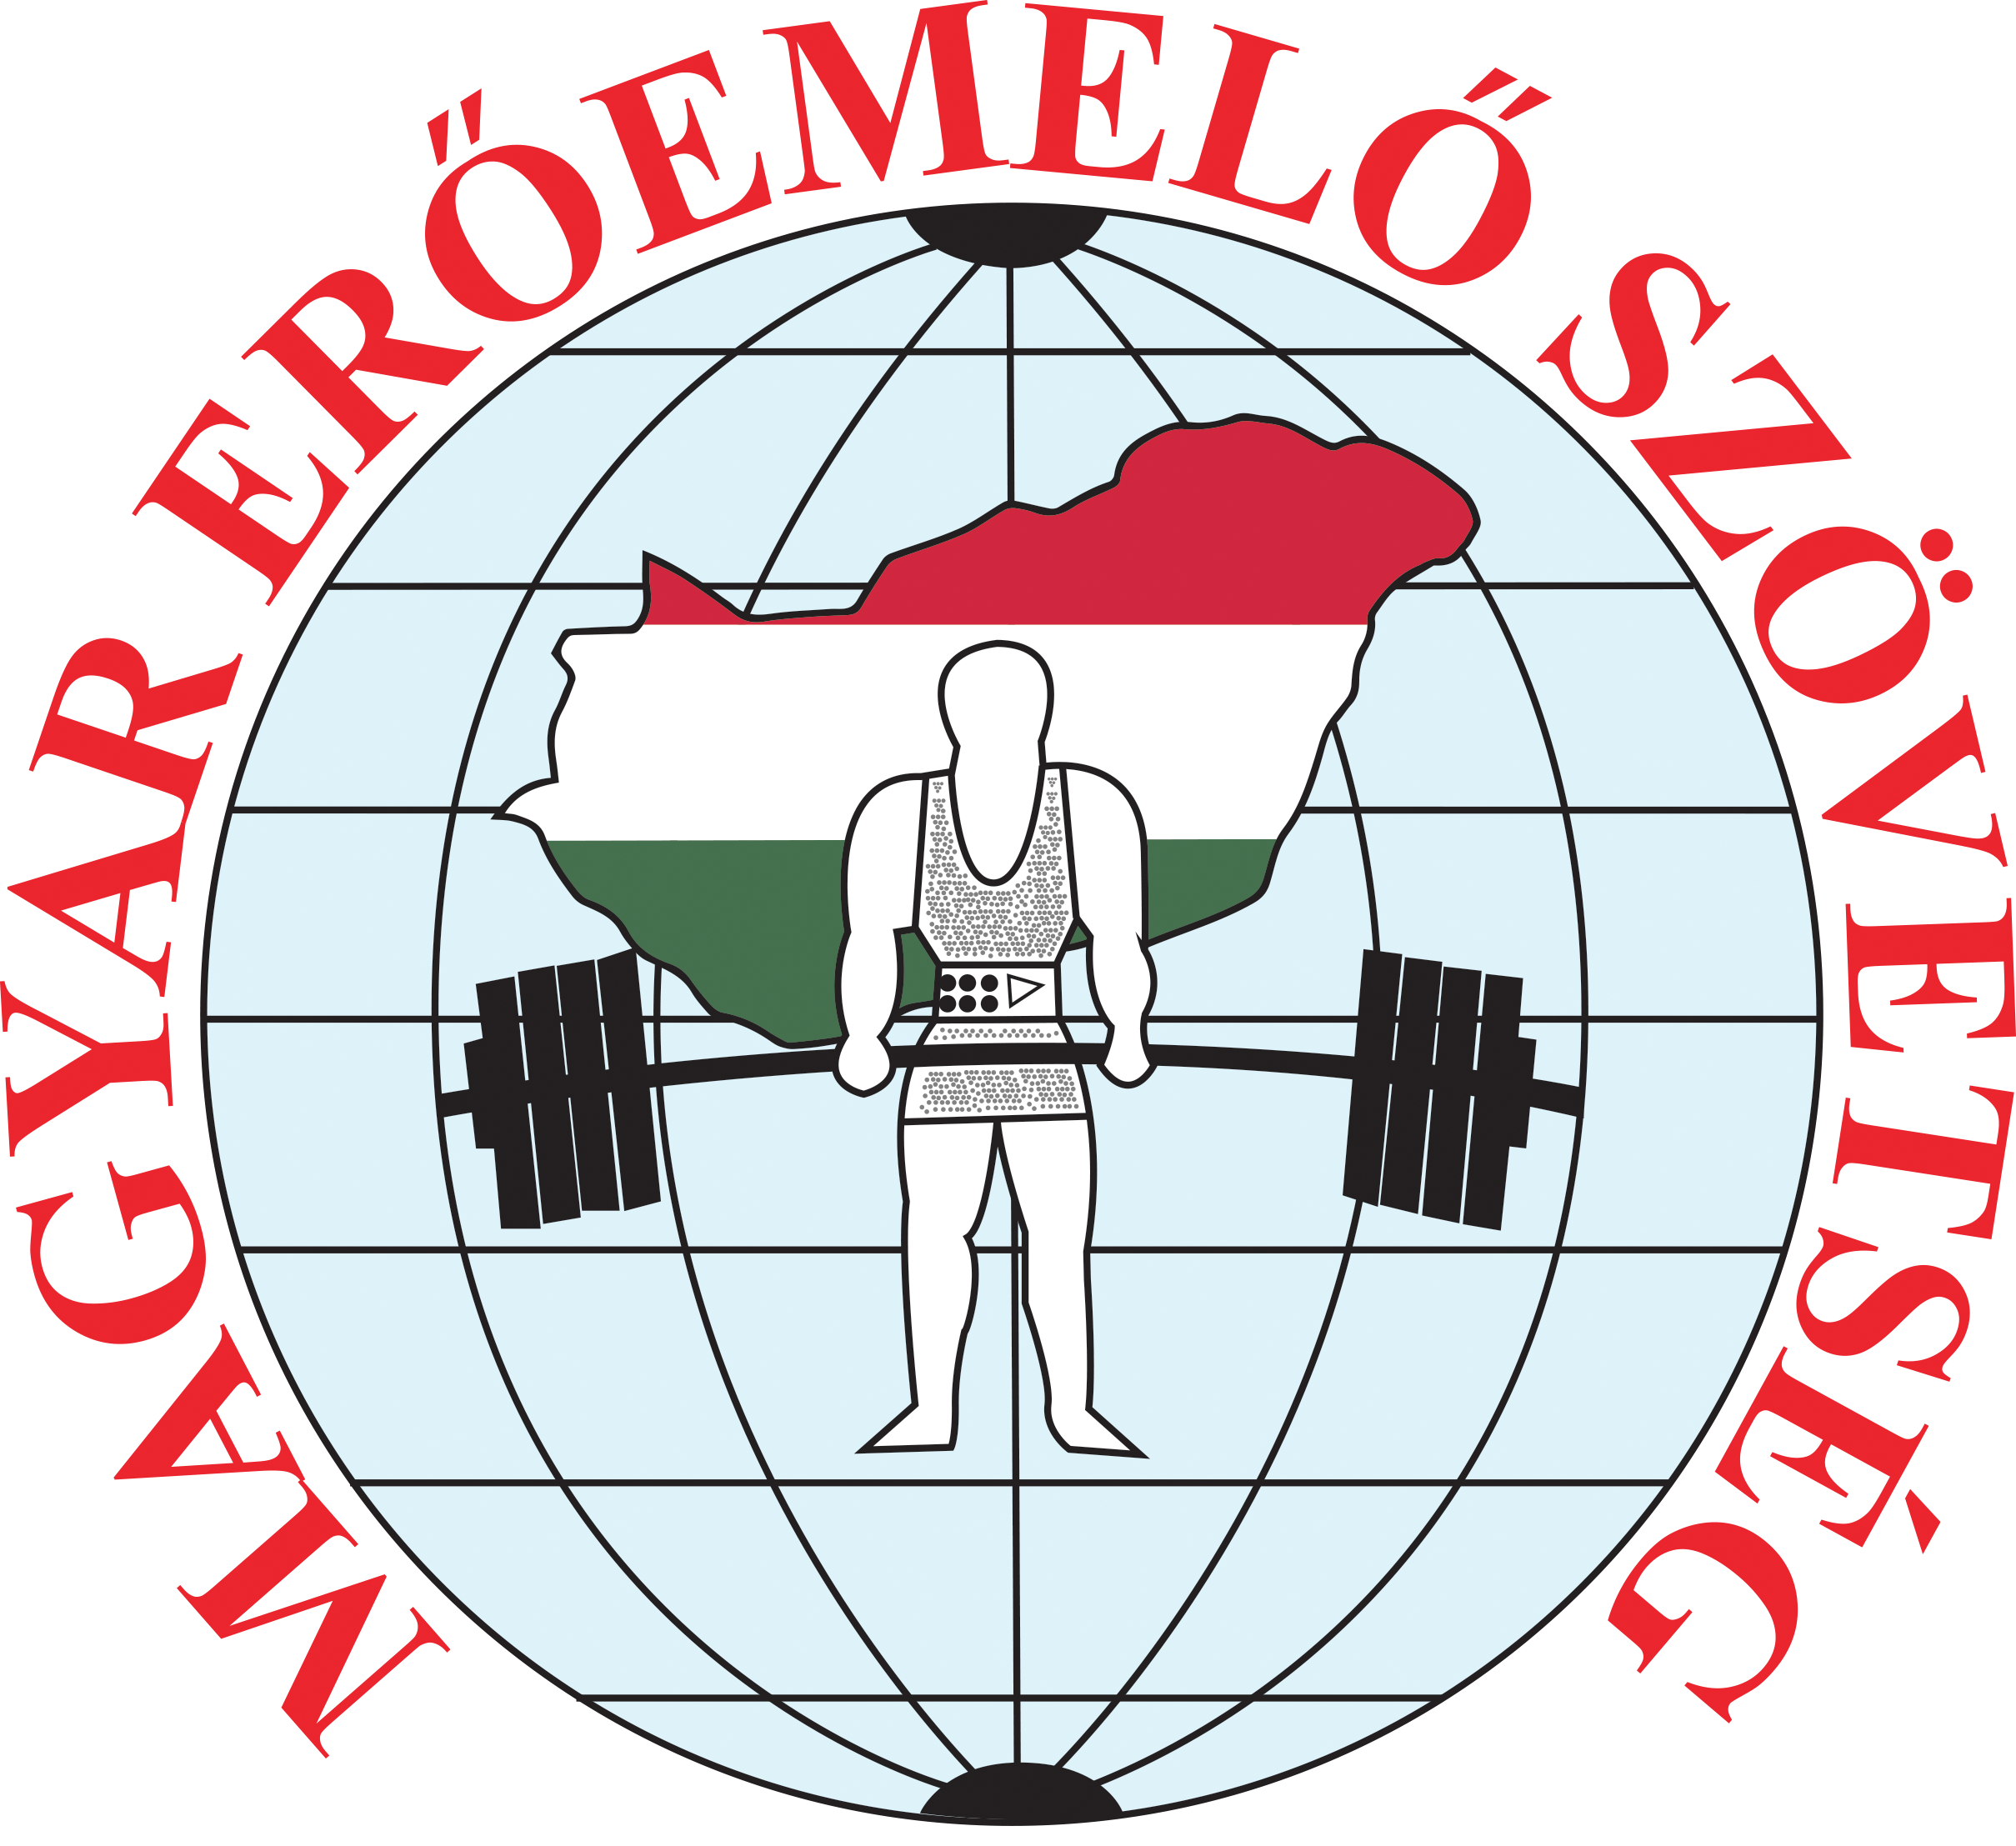 Magyar Erőemelő Szövetség